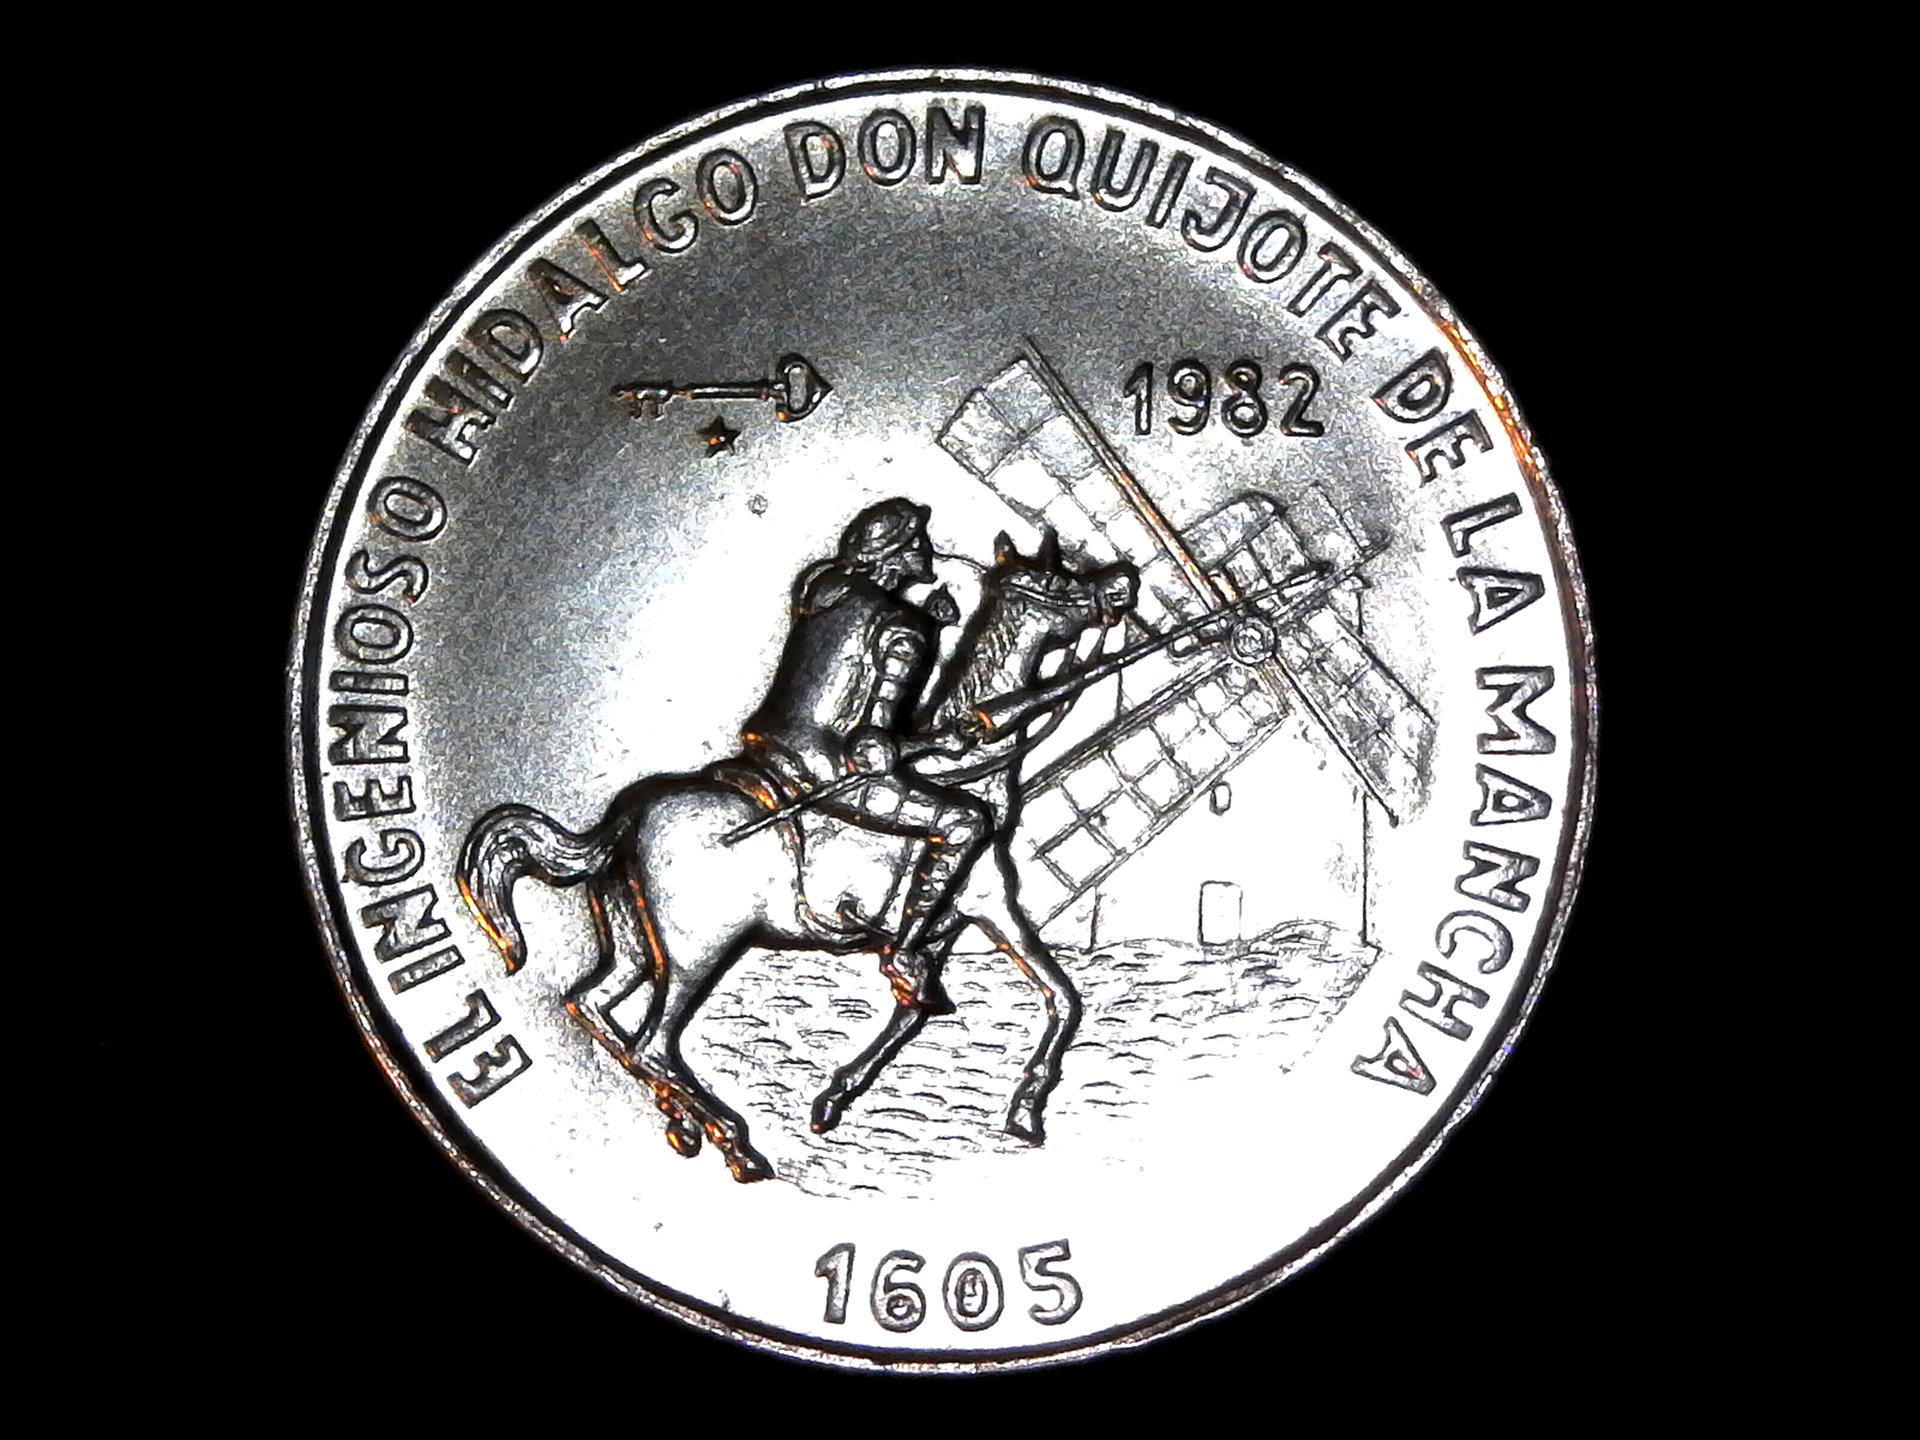 Cuba One Peso Don Quixote B 1982 obv.jpg